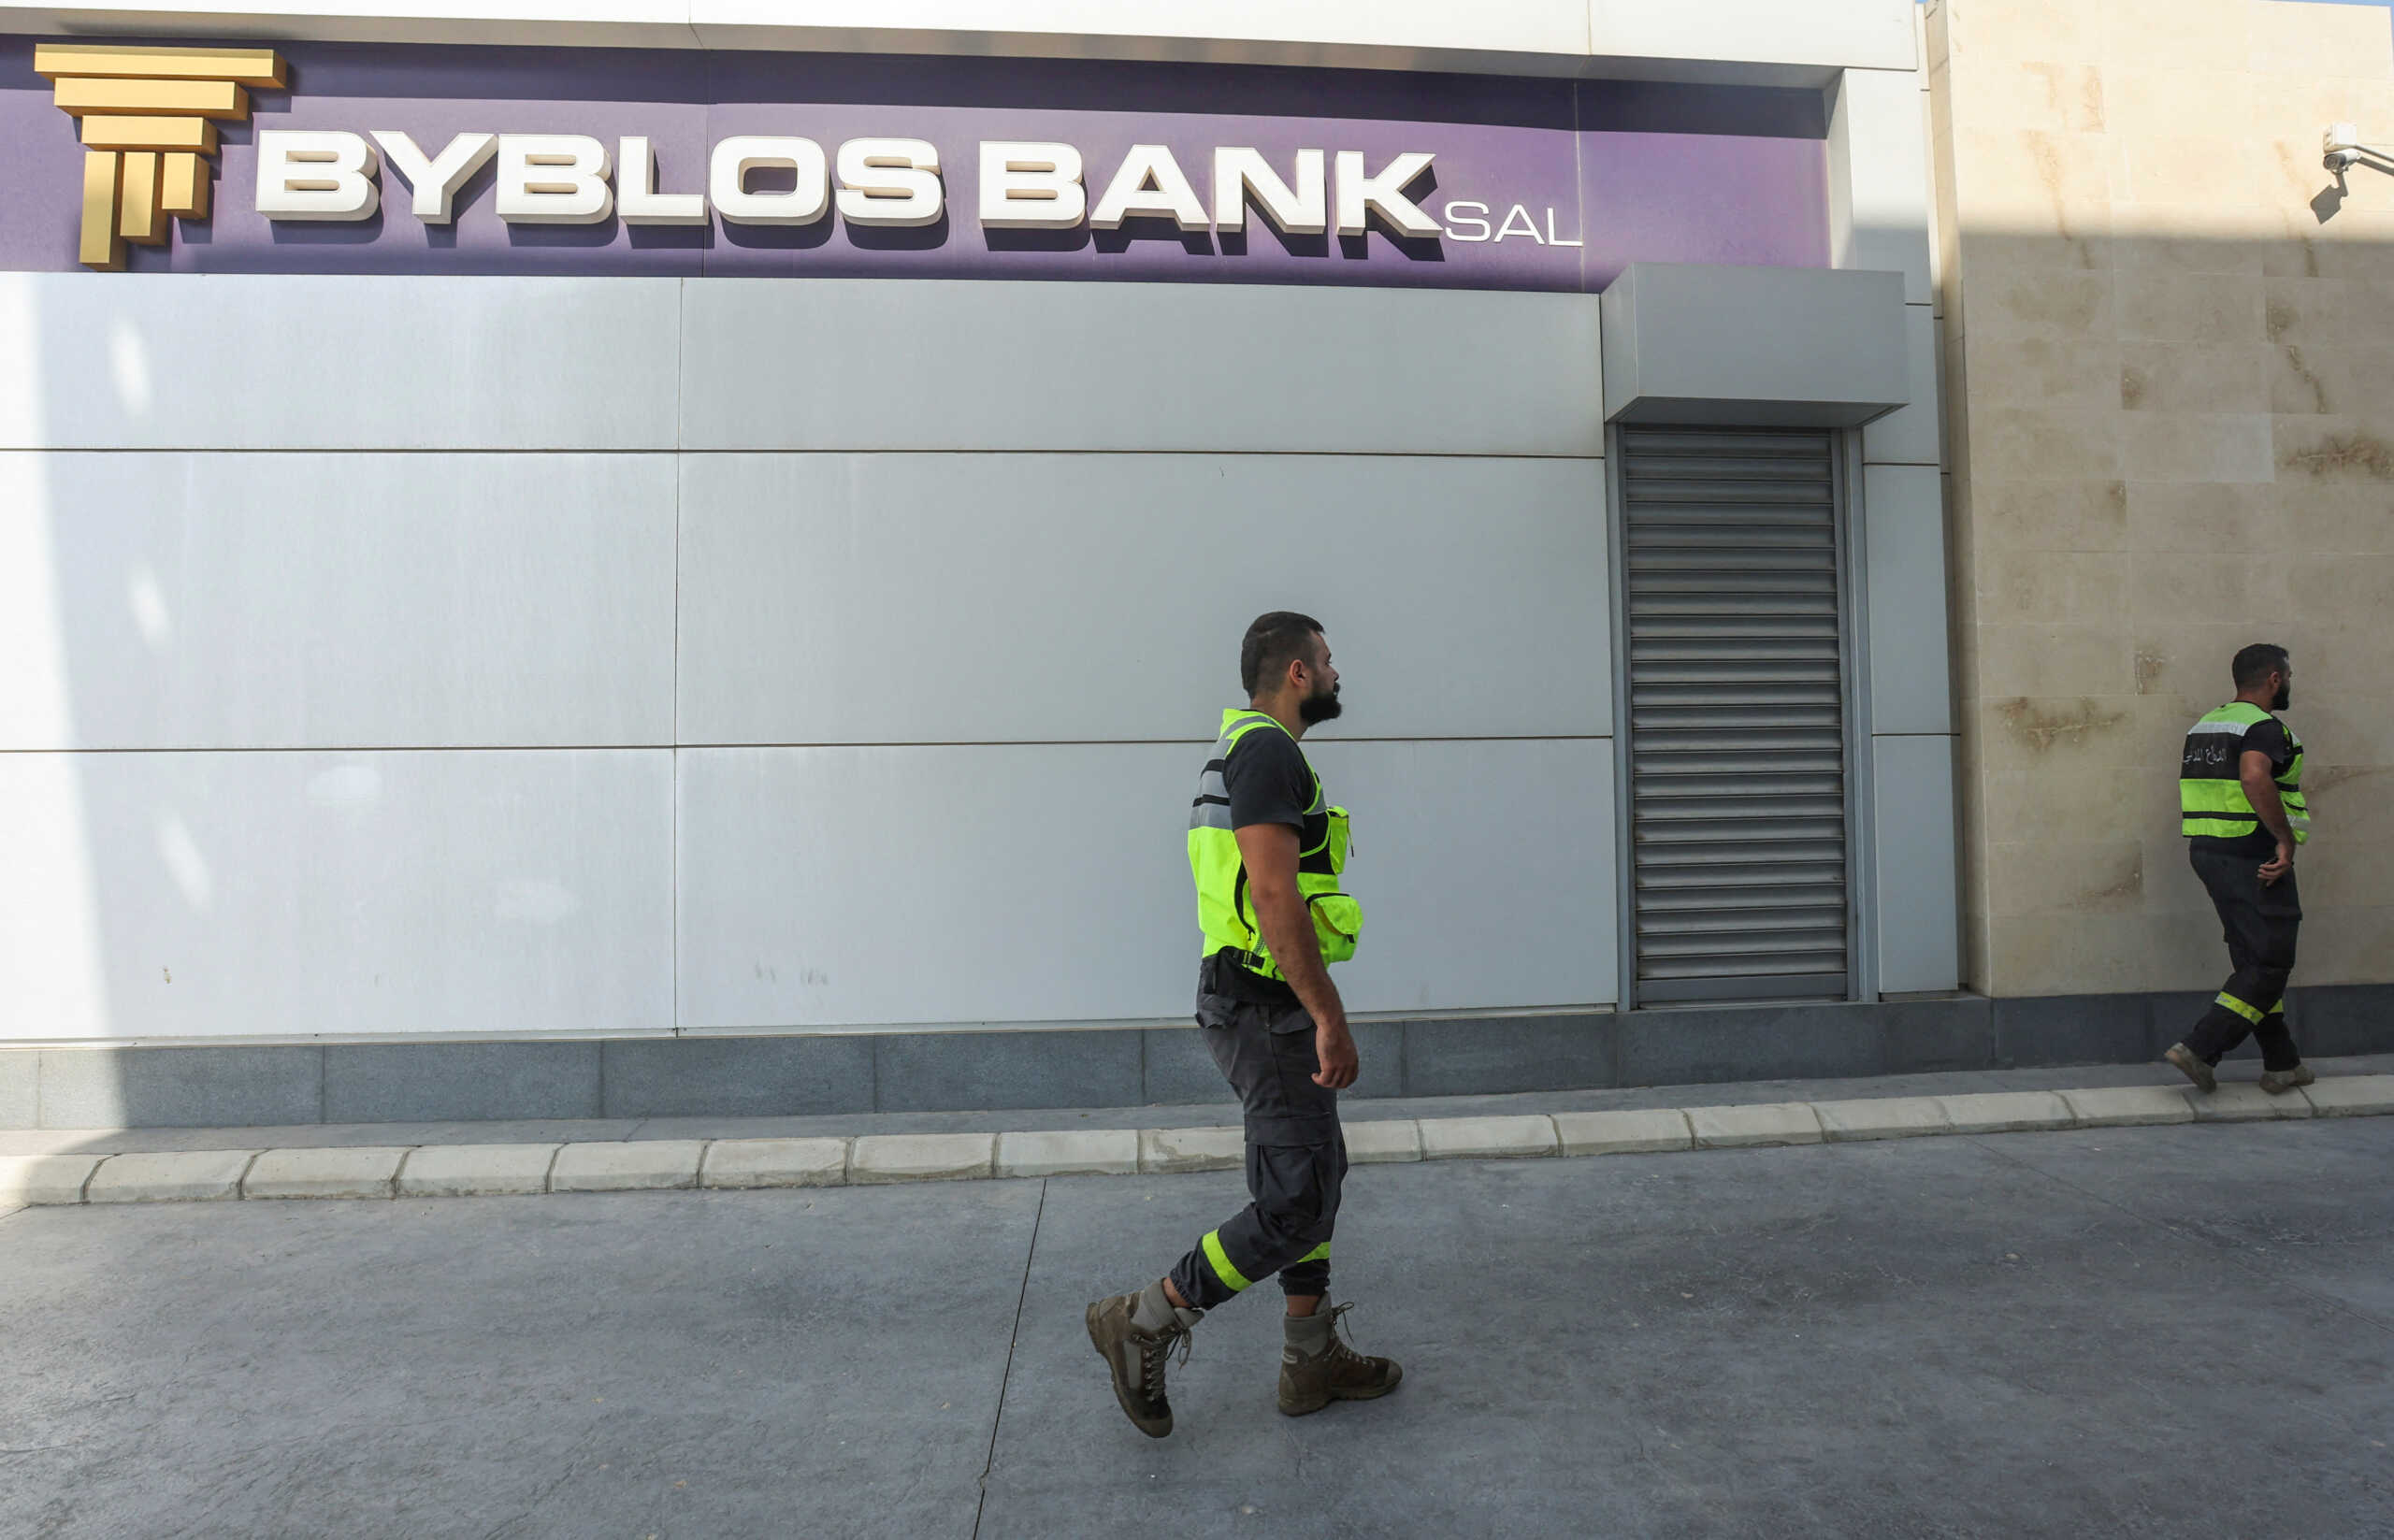 Λίβανος: Δύο νέες προσπάθειες ληστείας σε τράπεζες – Απελπισμένοι οι πολίτες από τους περιορισμούς